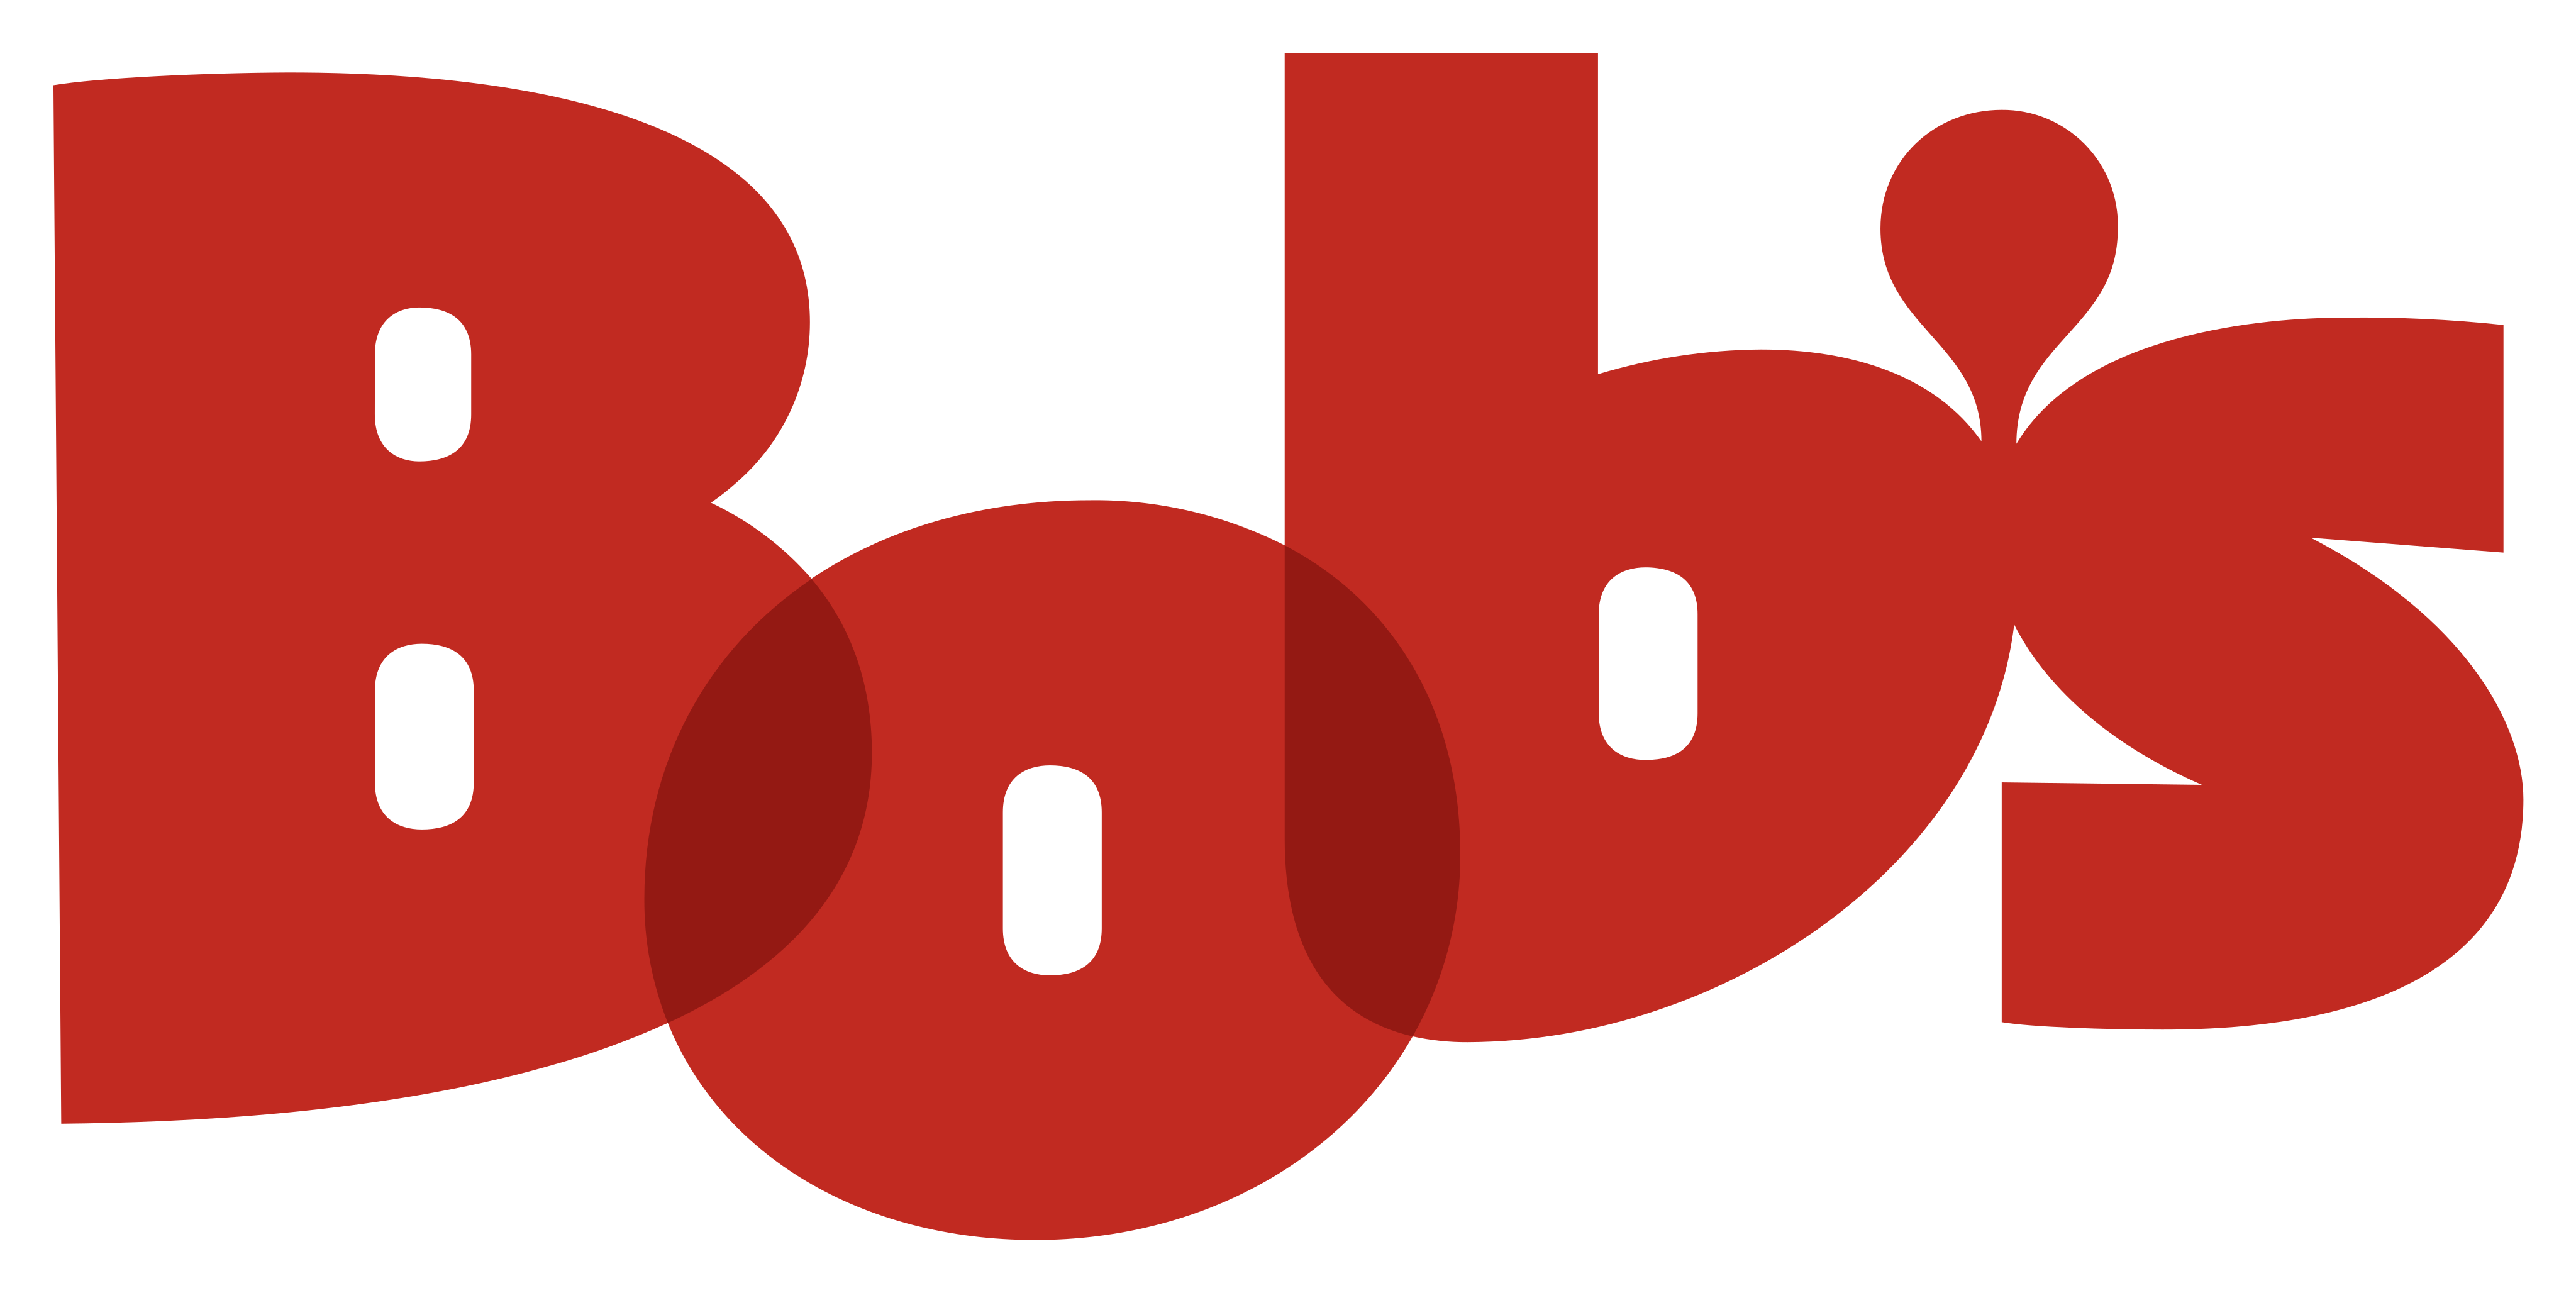 bobs-logo